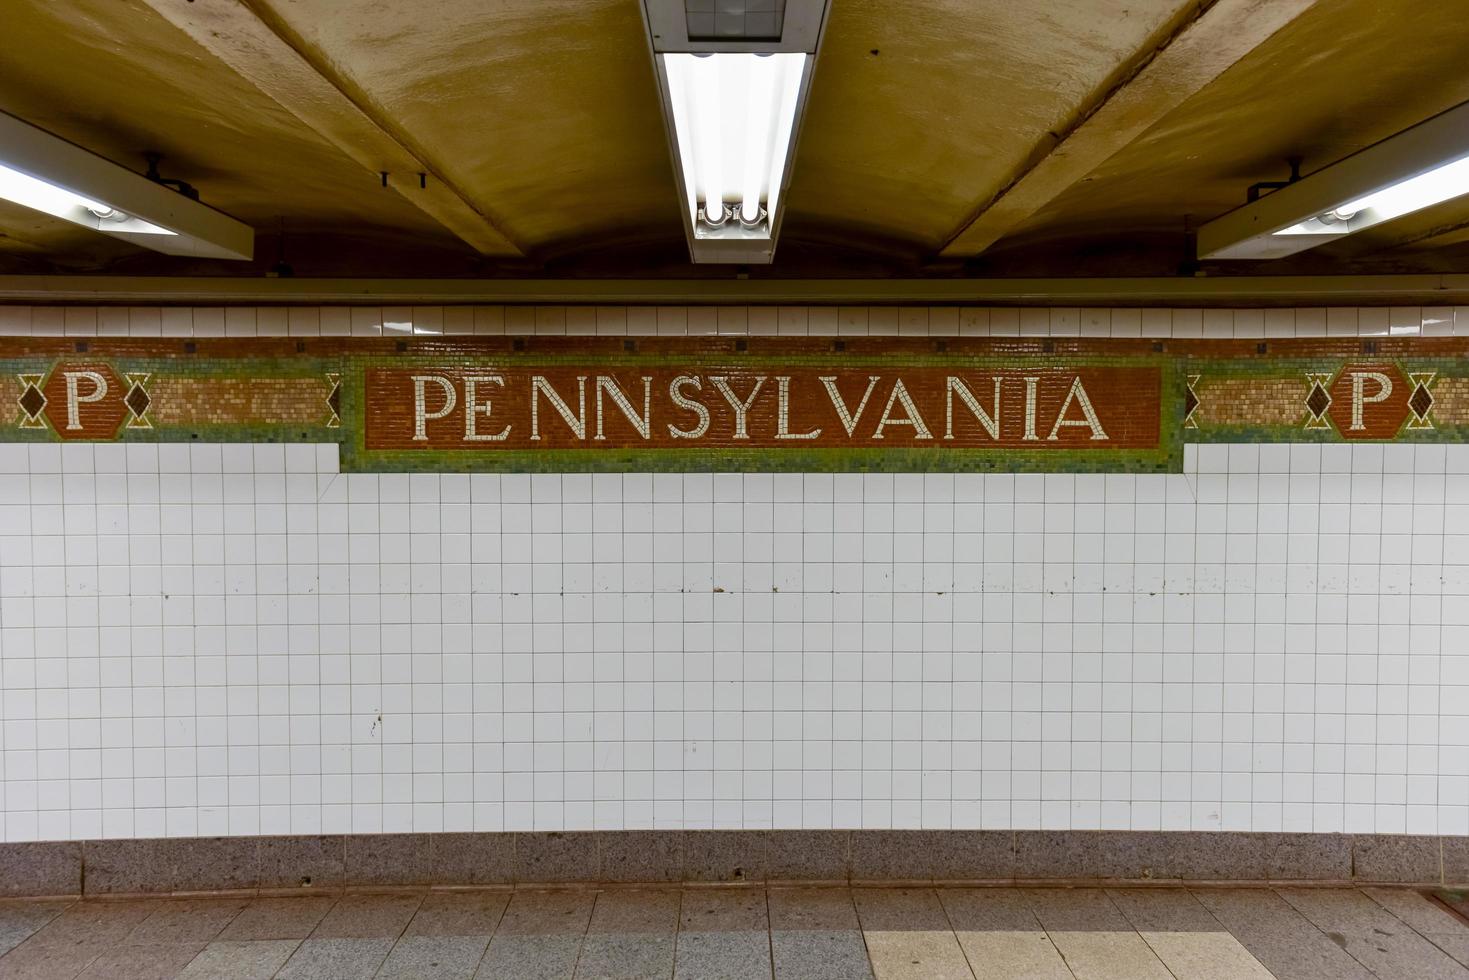 Nova york city - 16 de junho de 2016 - estação de pensilvânia, 34th street station metro em manhattan. foto